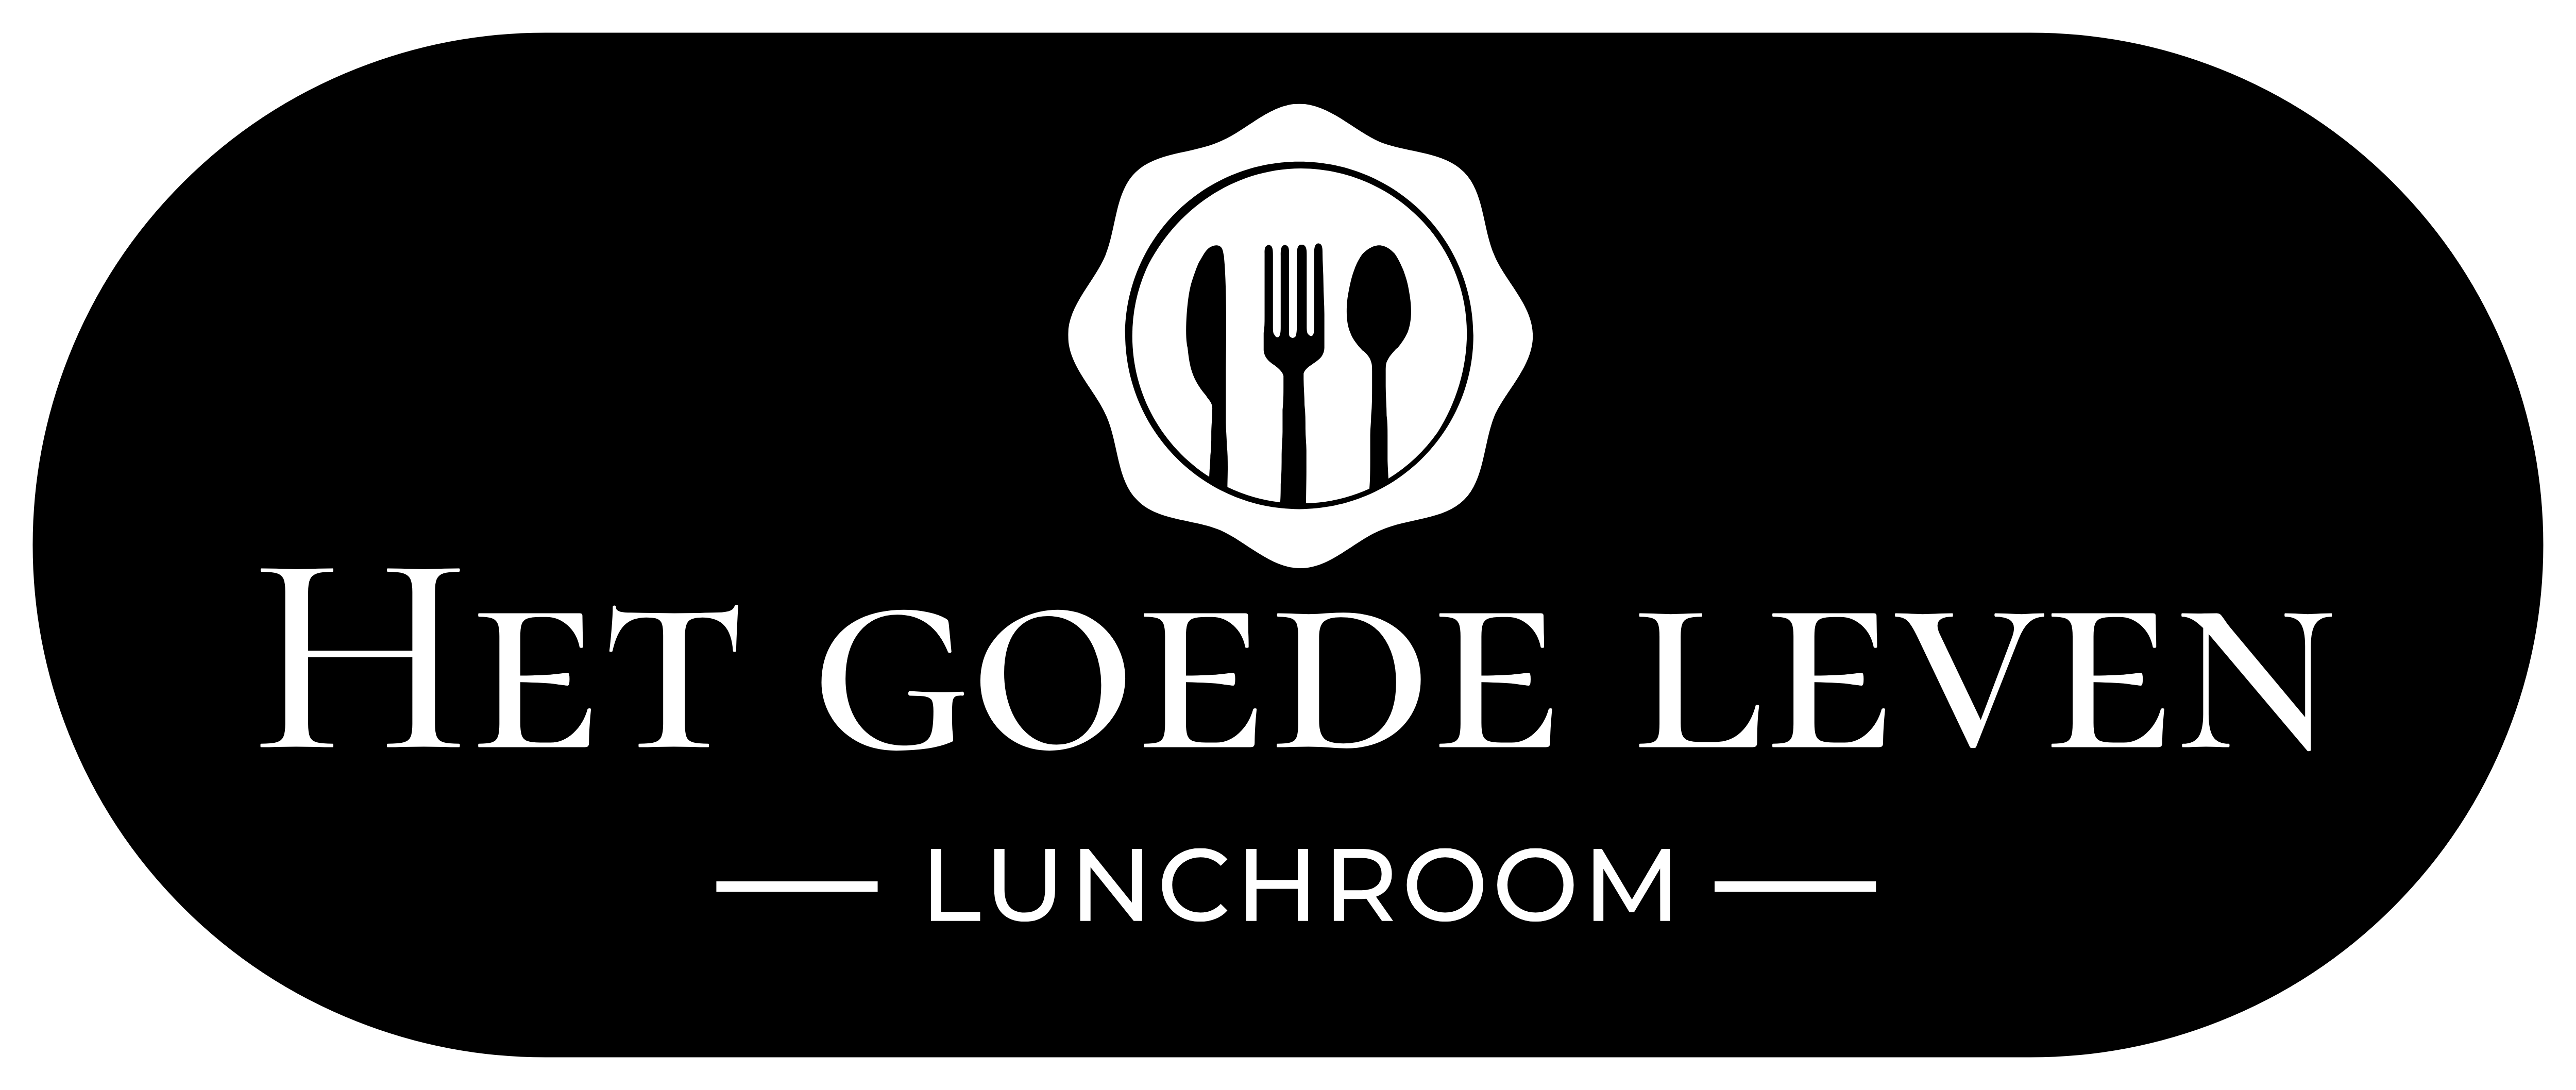 Het logo van Lunchroom Het goede leven te Veendam